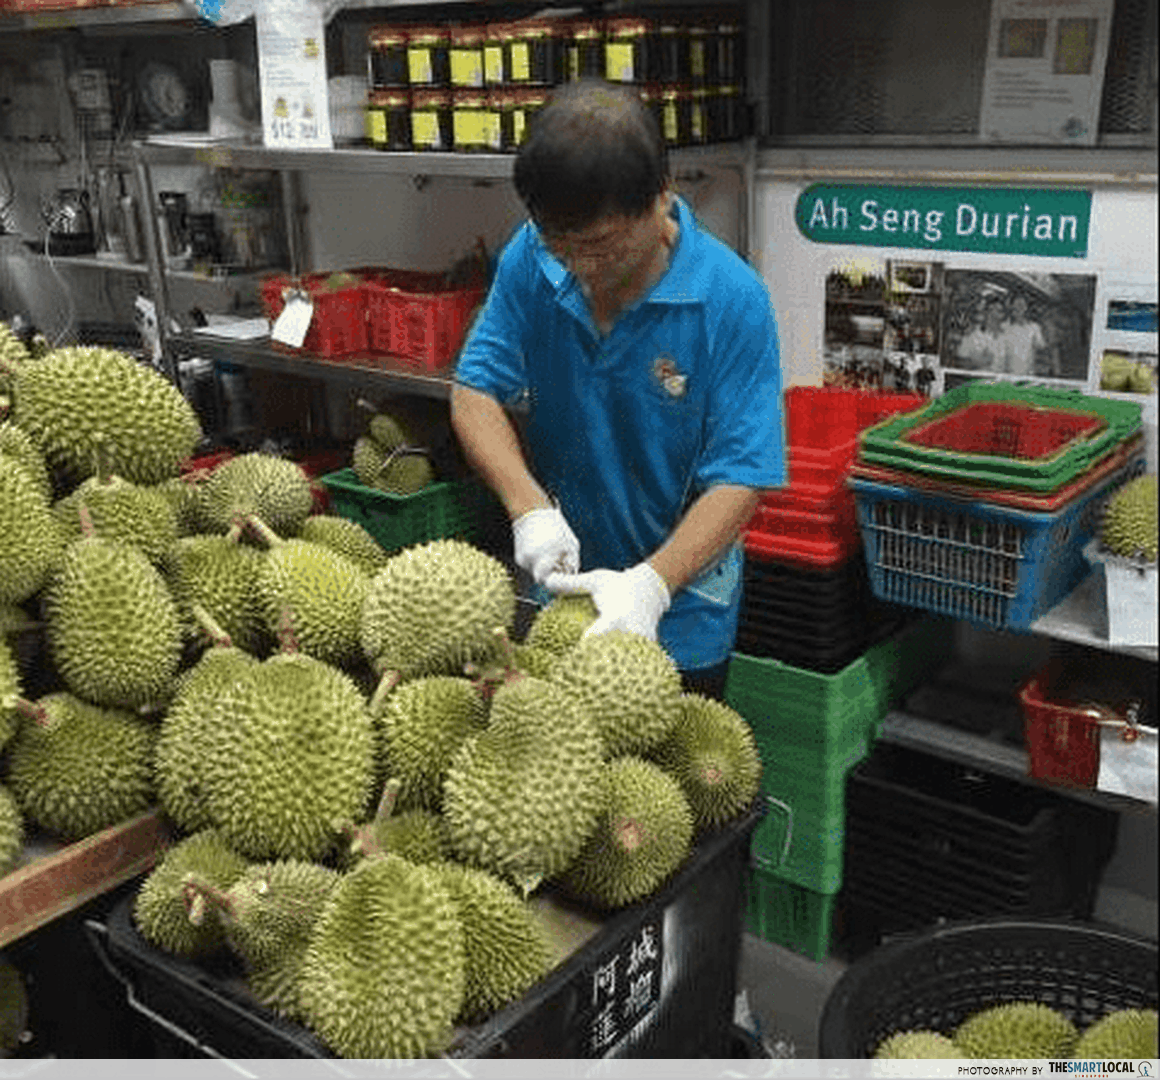 ah seng cutting durian